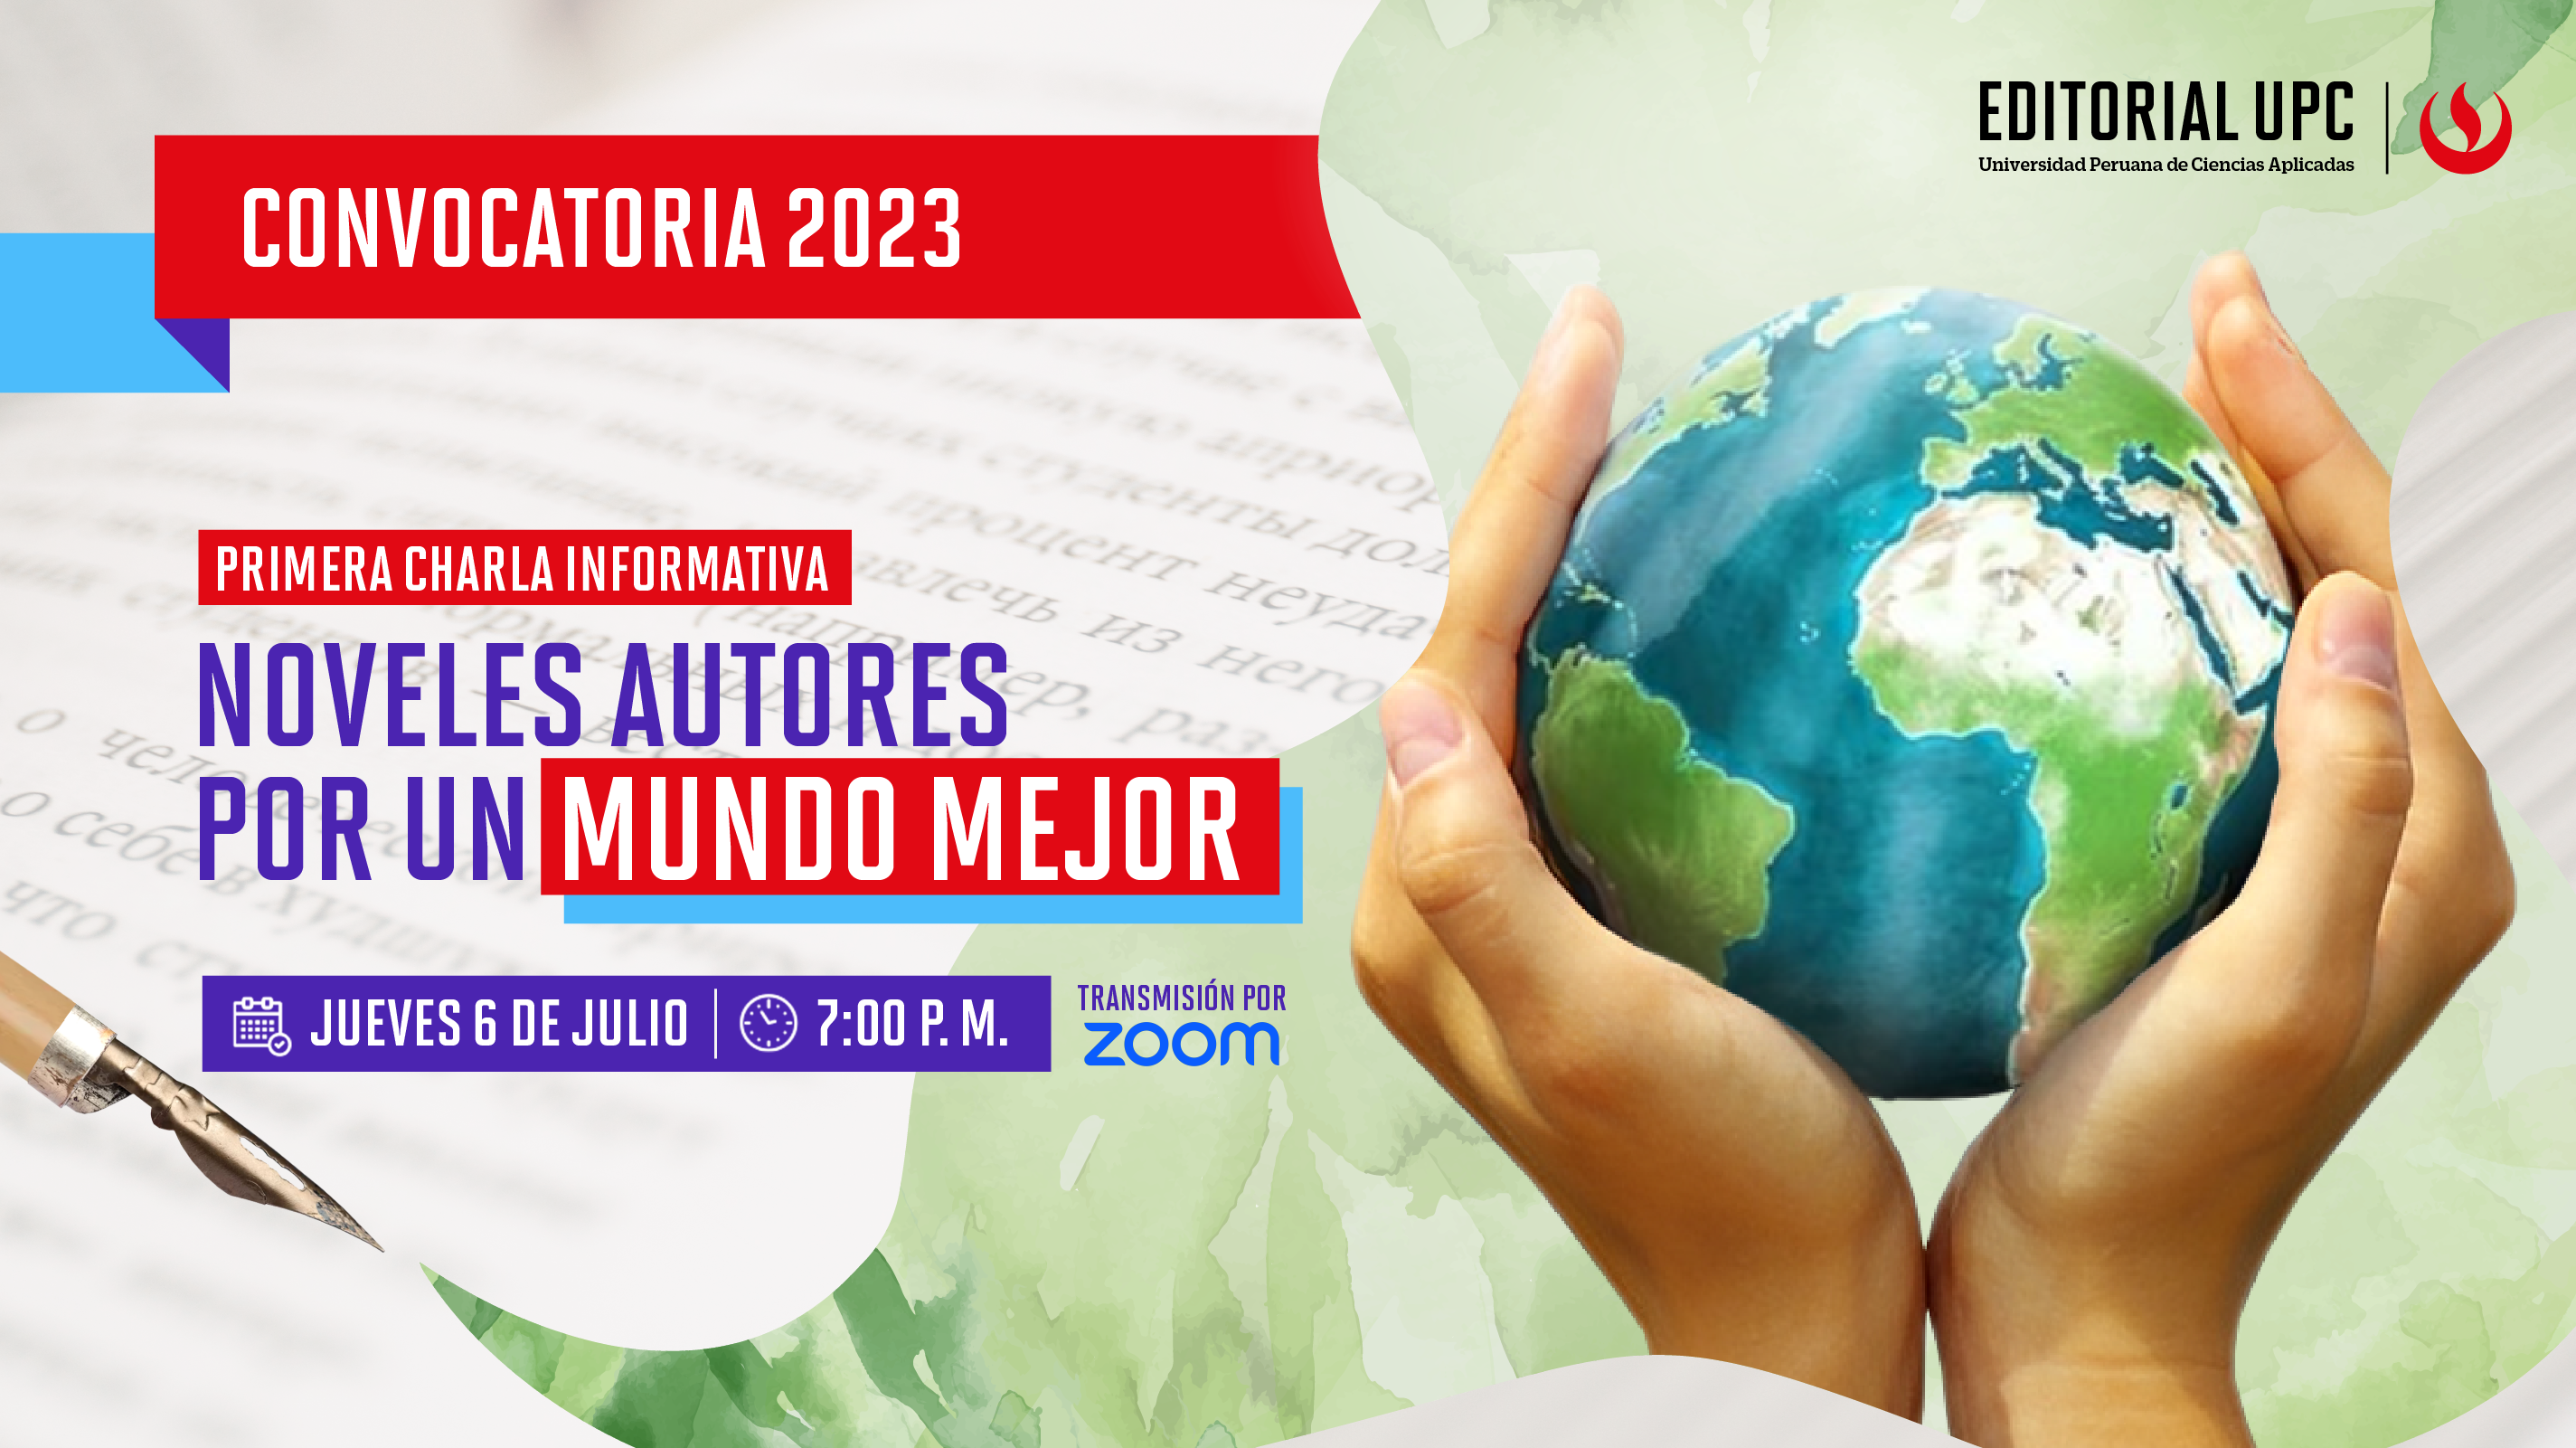 1ra Charla informativa: Convocatoria 2023 Nóveles autores por un mundo mejor